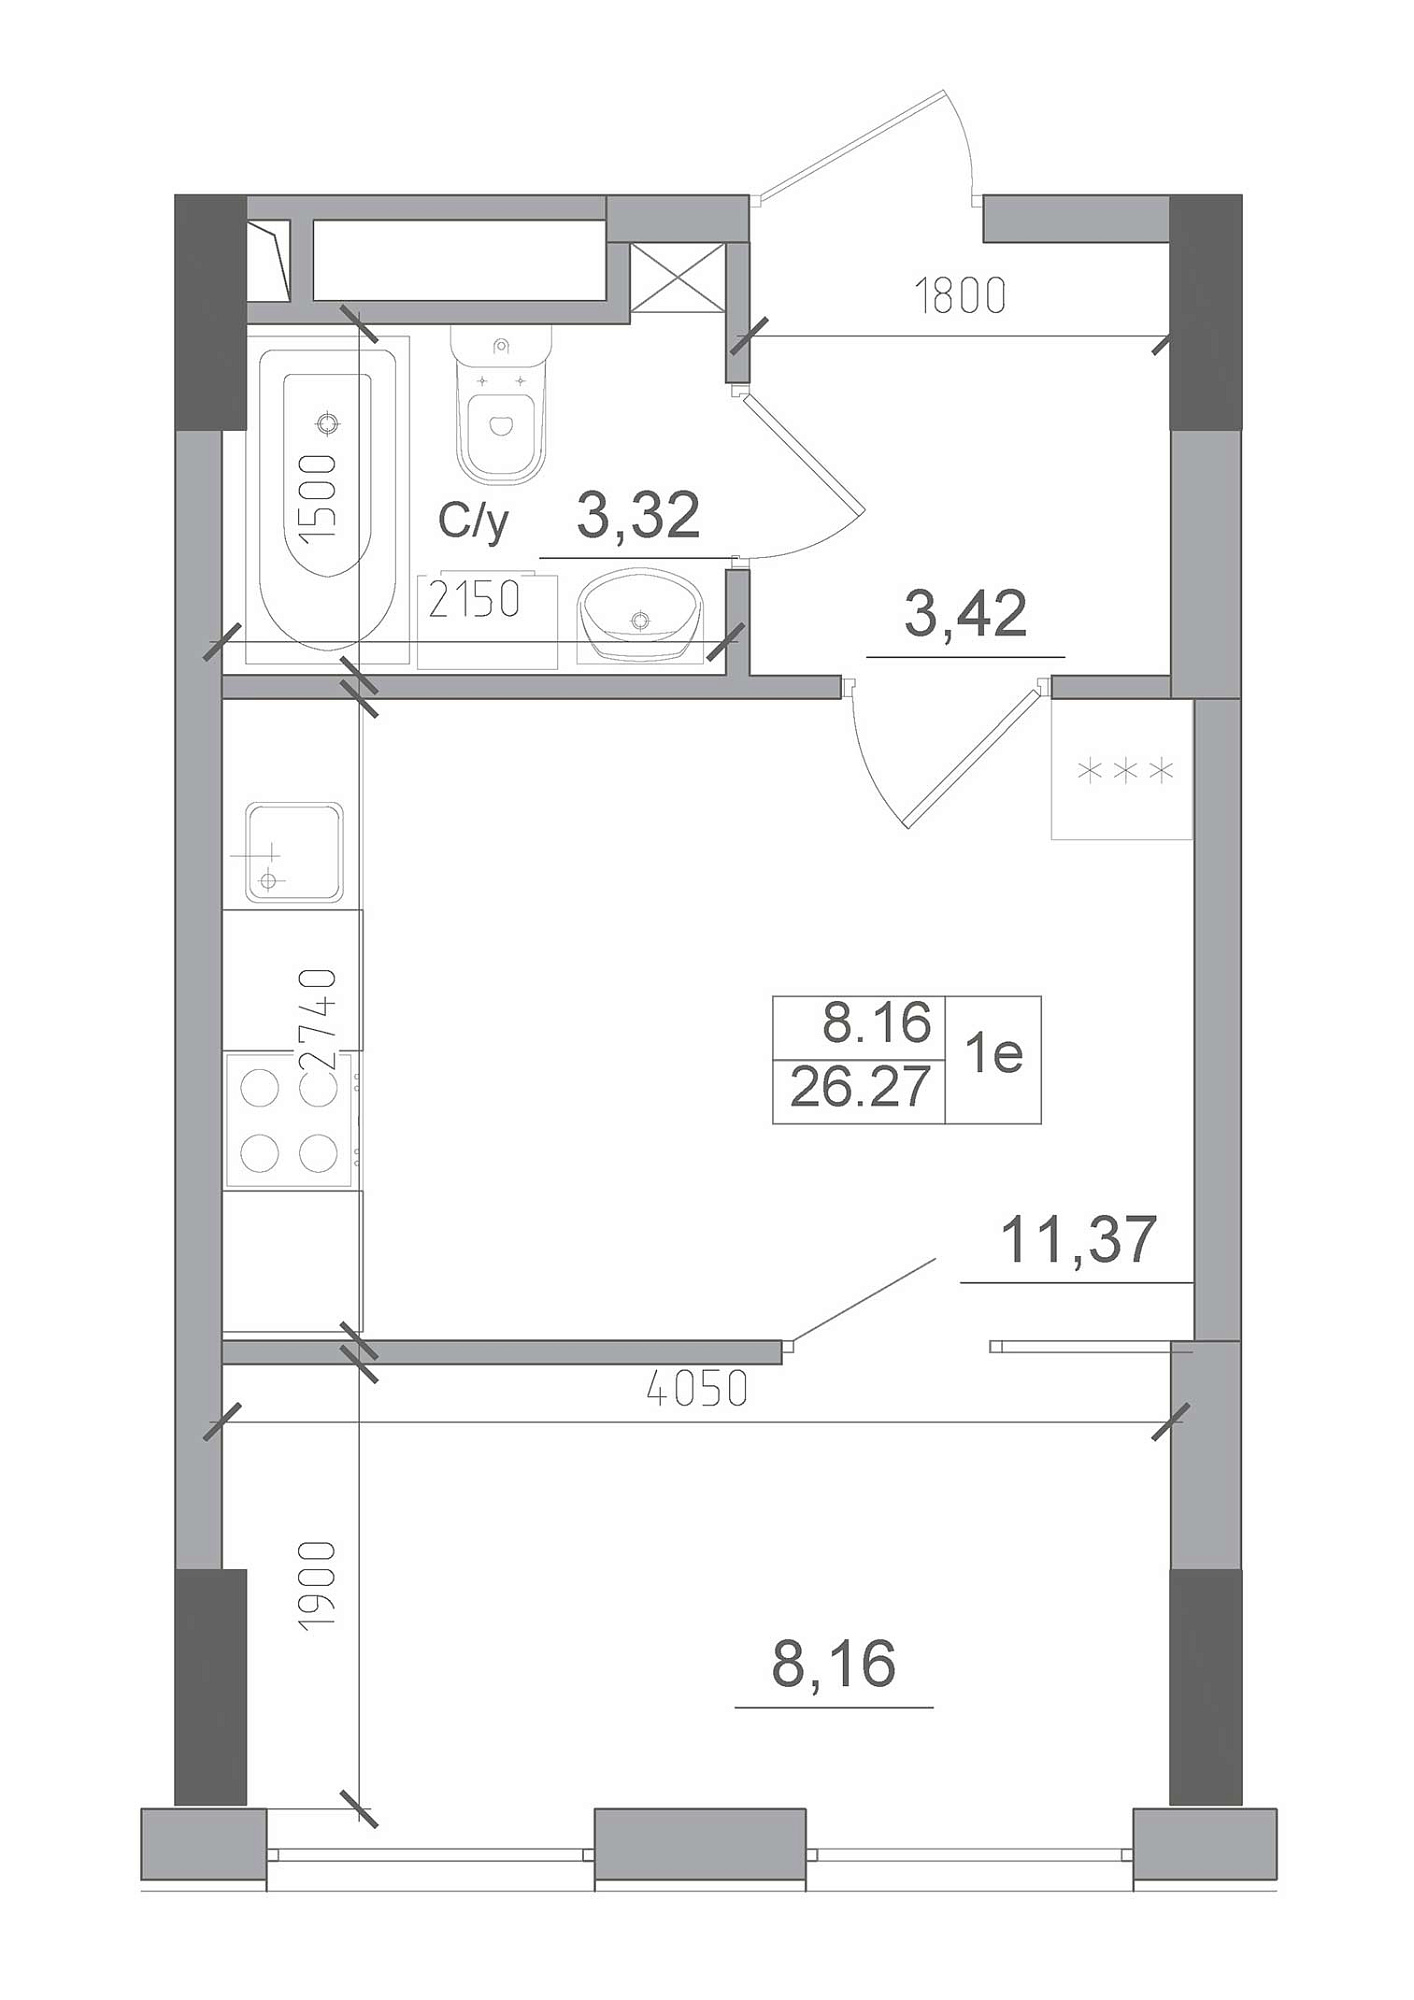 Планування 1-к квартира площею 26.27м2, AB-22-07/00009.